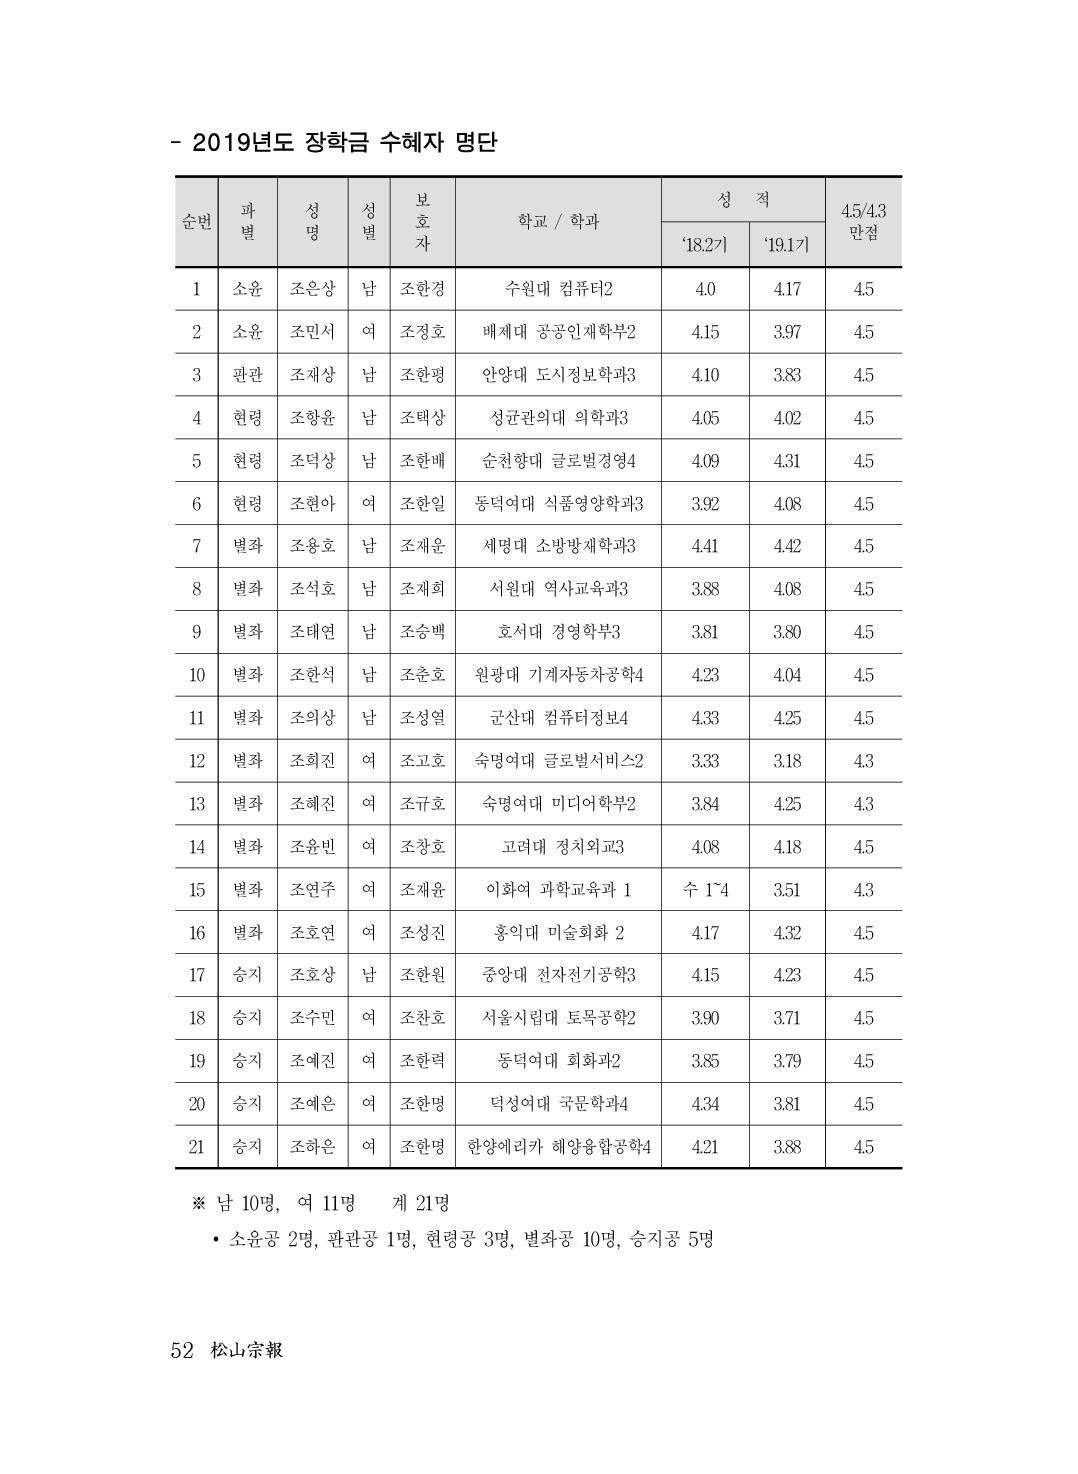 (전체) 송산종보(27호)(최종)_53.jpg